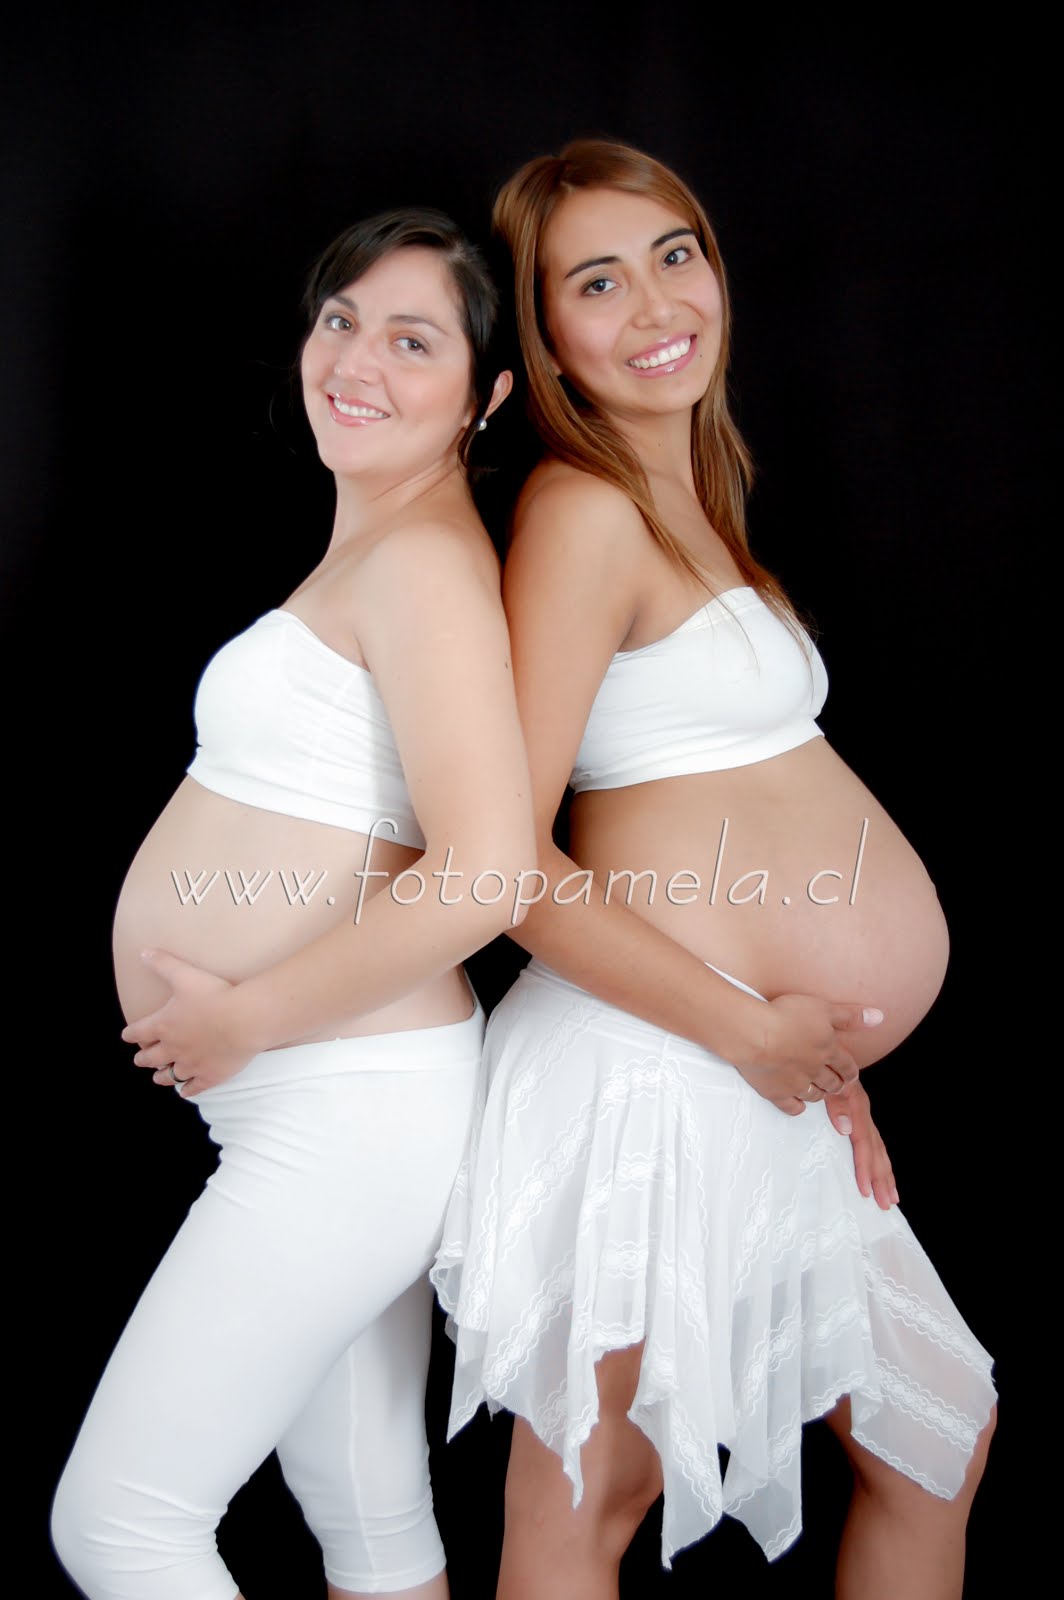 embarazadas foto estudio dos personas